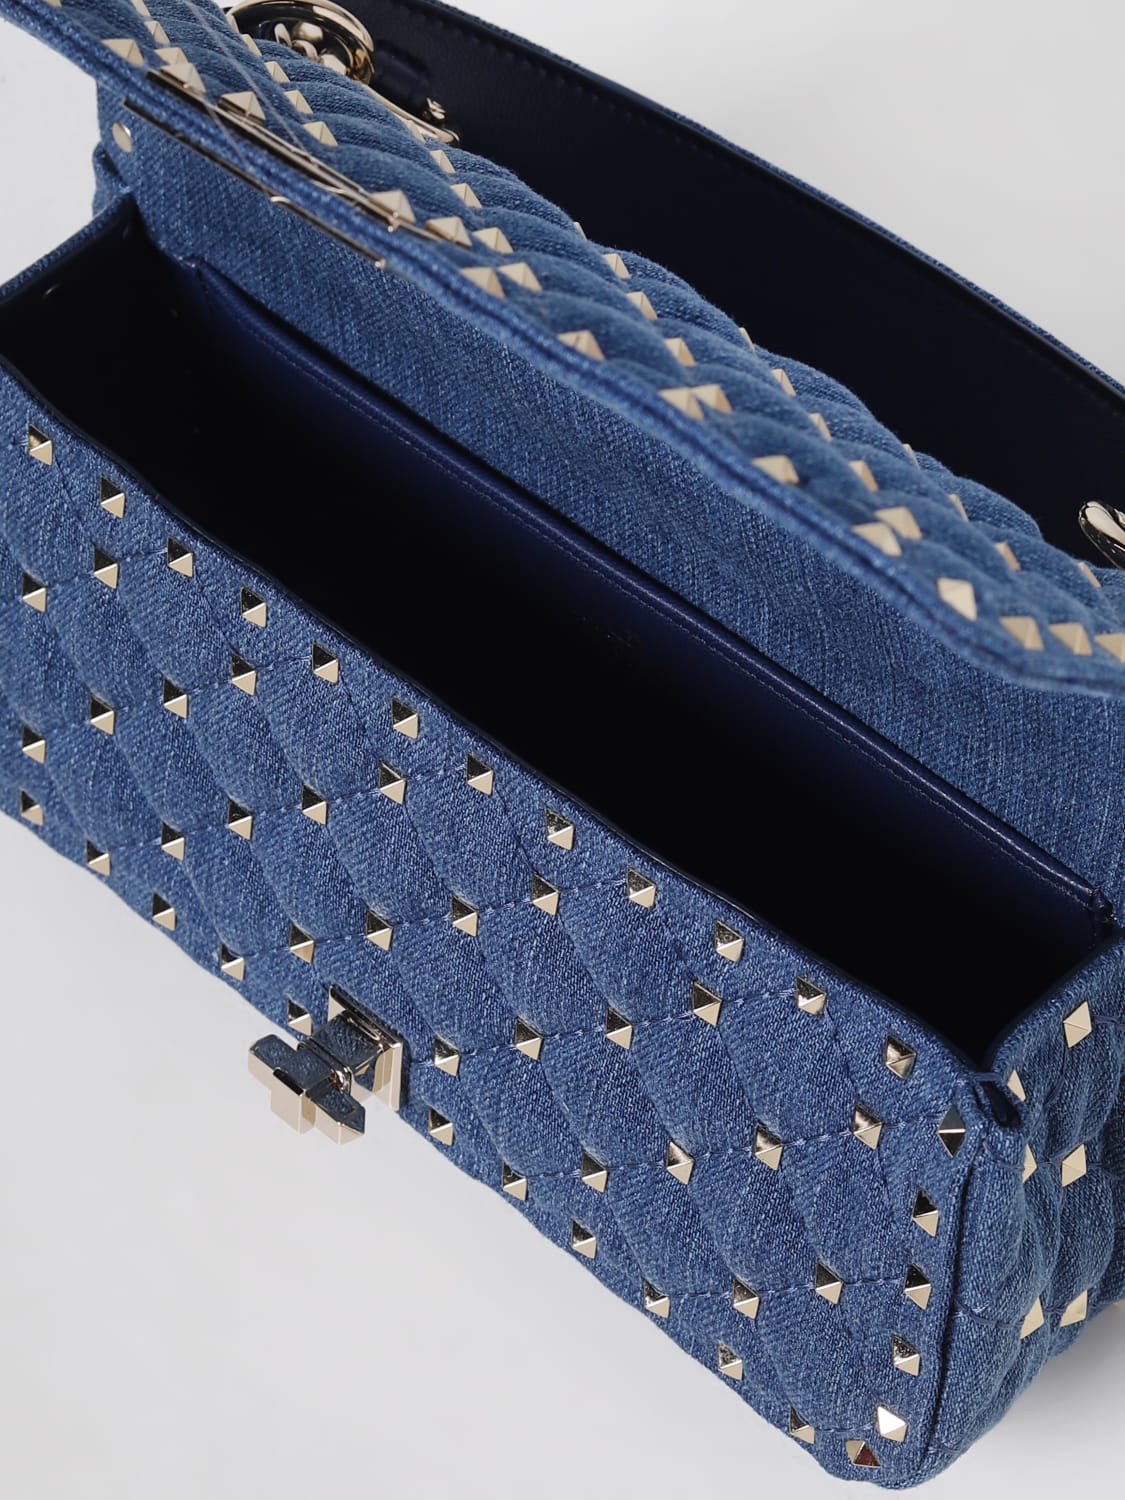 VALENTINO GARAVANI: Rockstud Spike bag in quilted denim - Blue